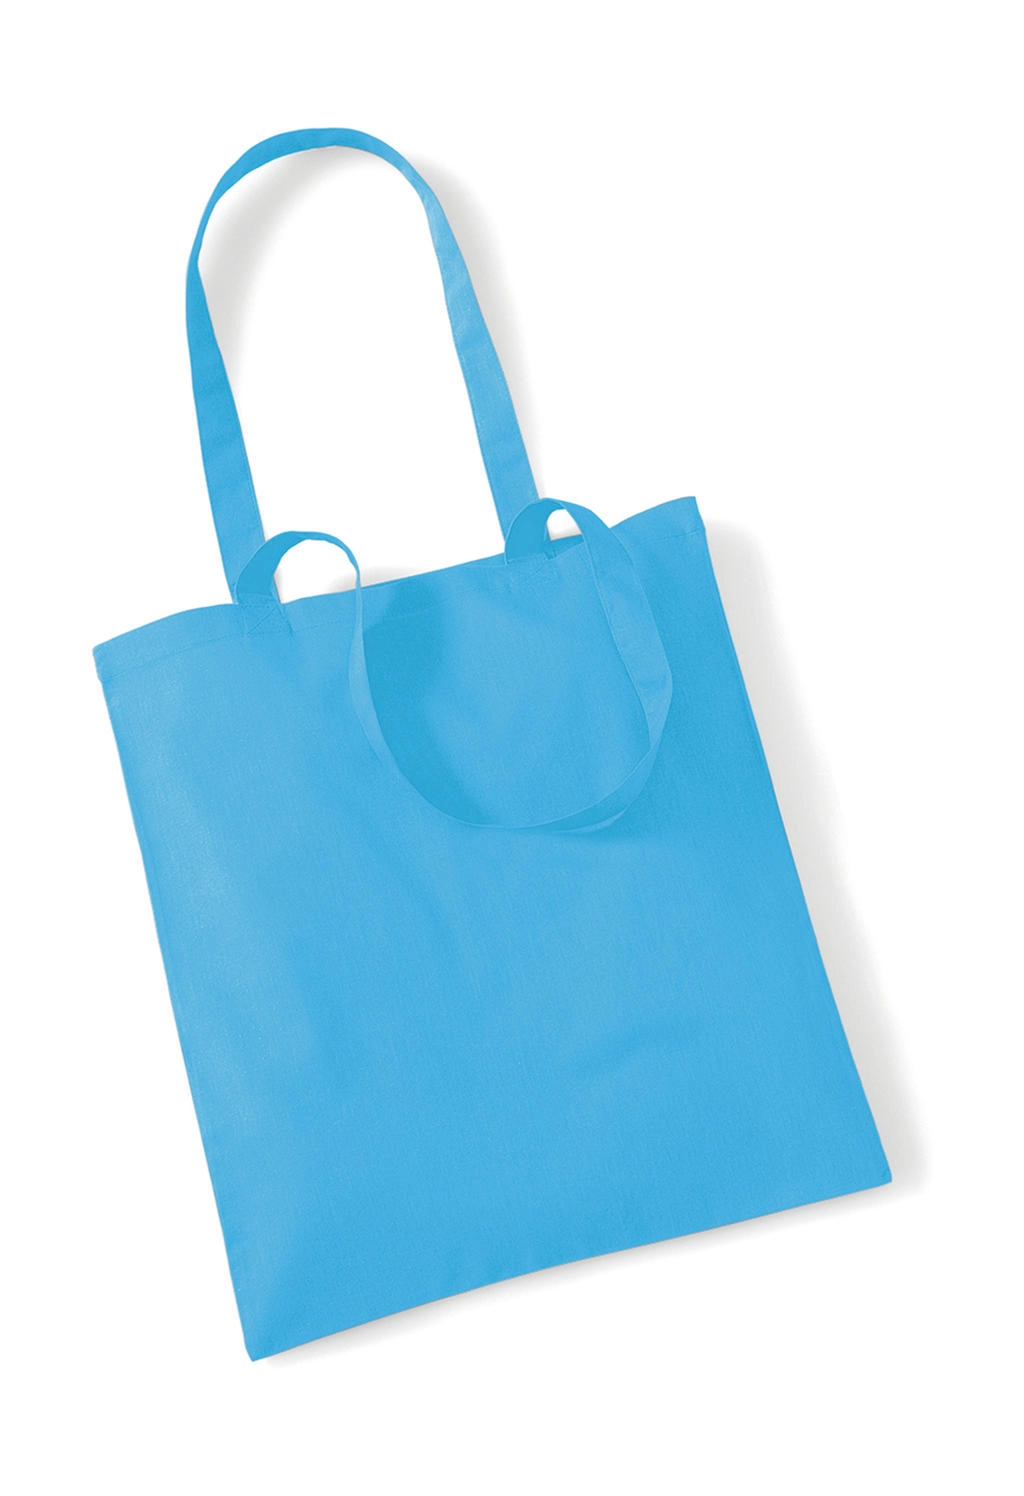 Bag for Life - Long Handles zum Besticken und Bedrucken in der Farbe Surf Blue mit Ihren Logo, Schriftzug oder Motiv.